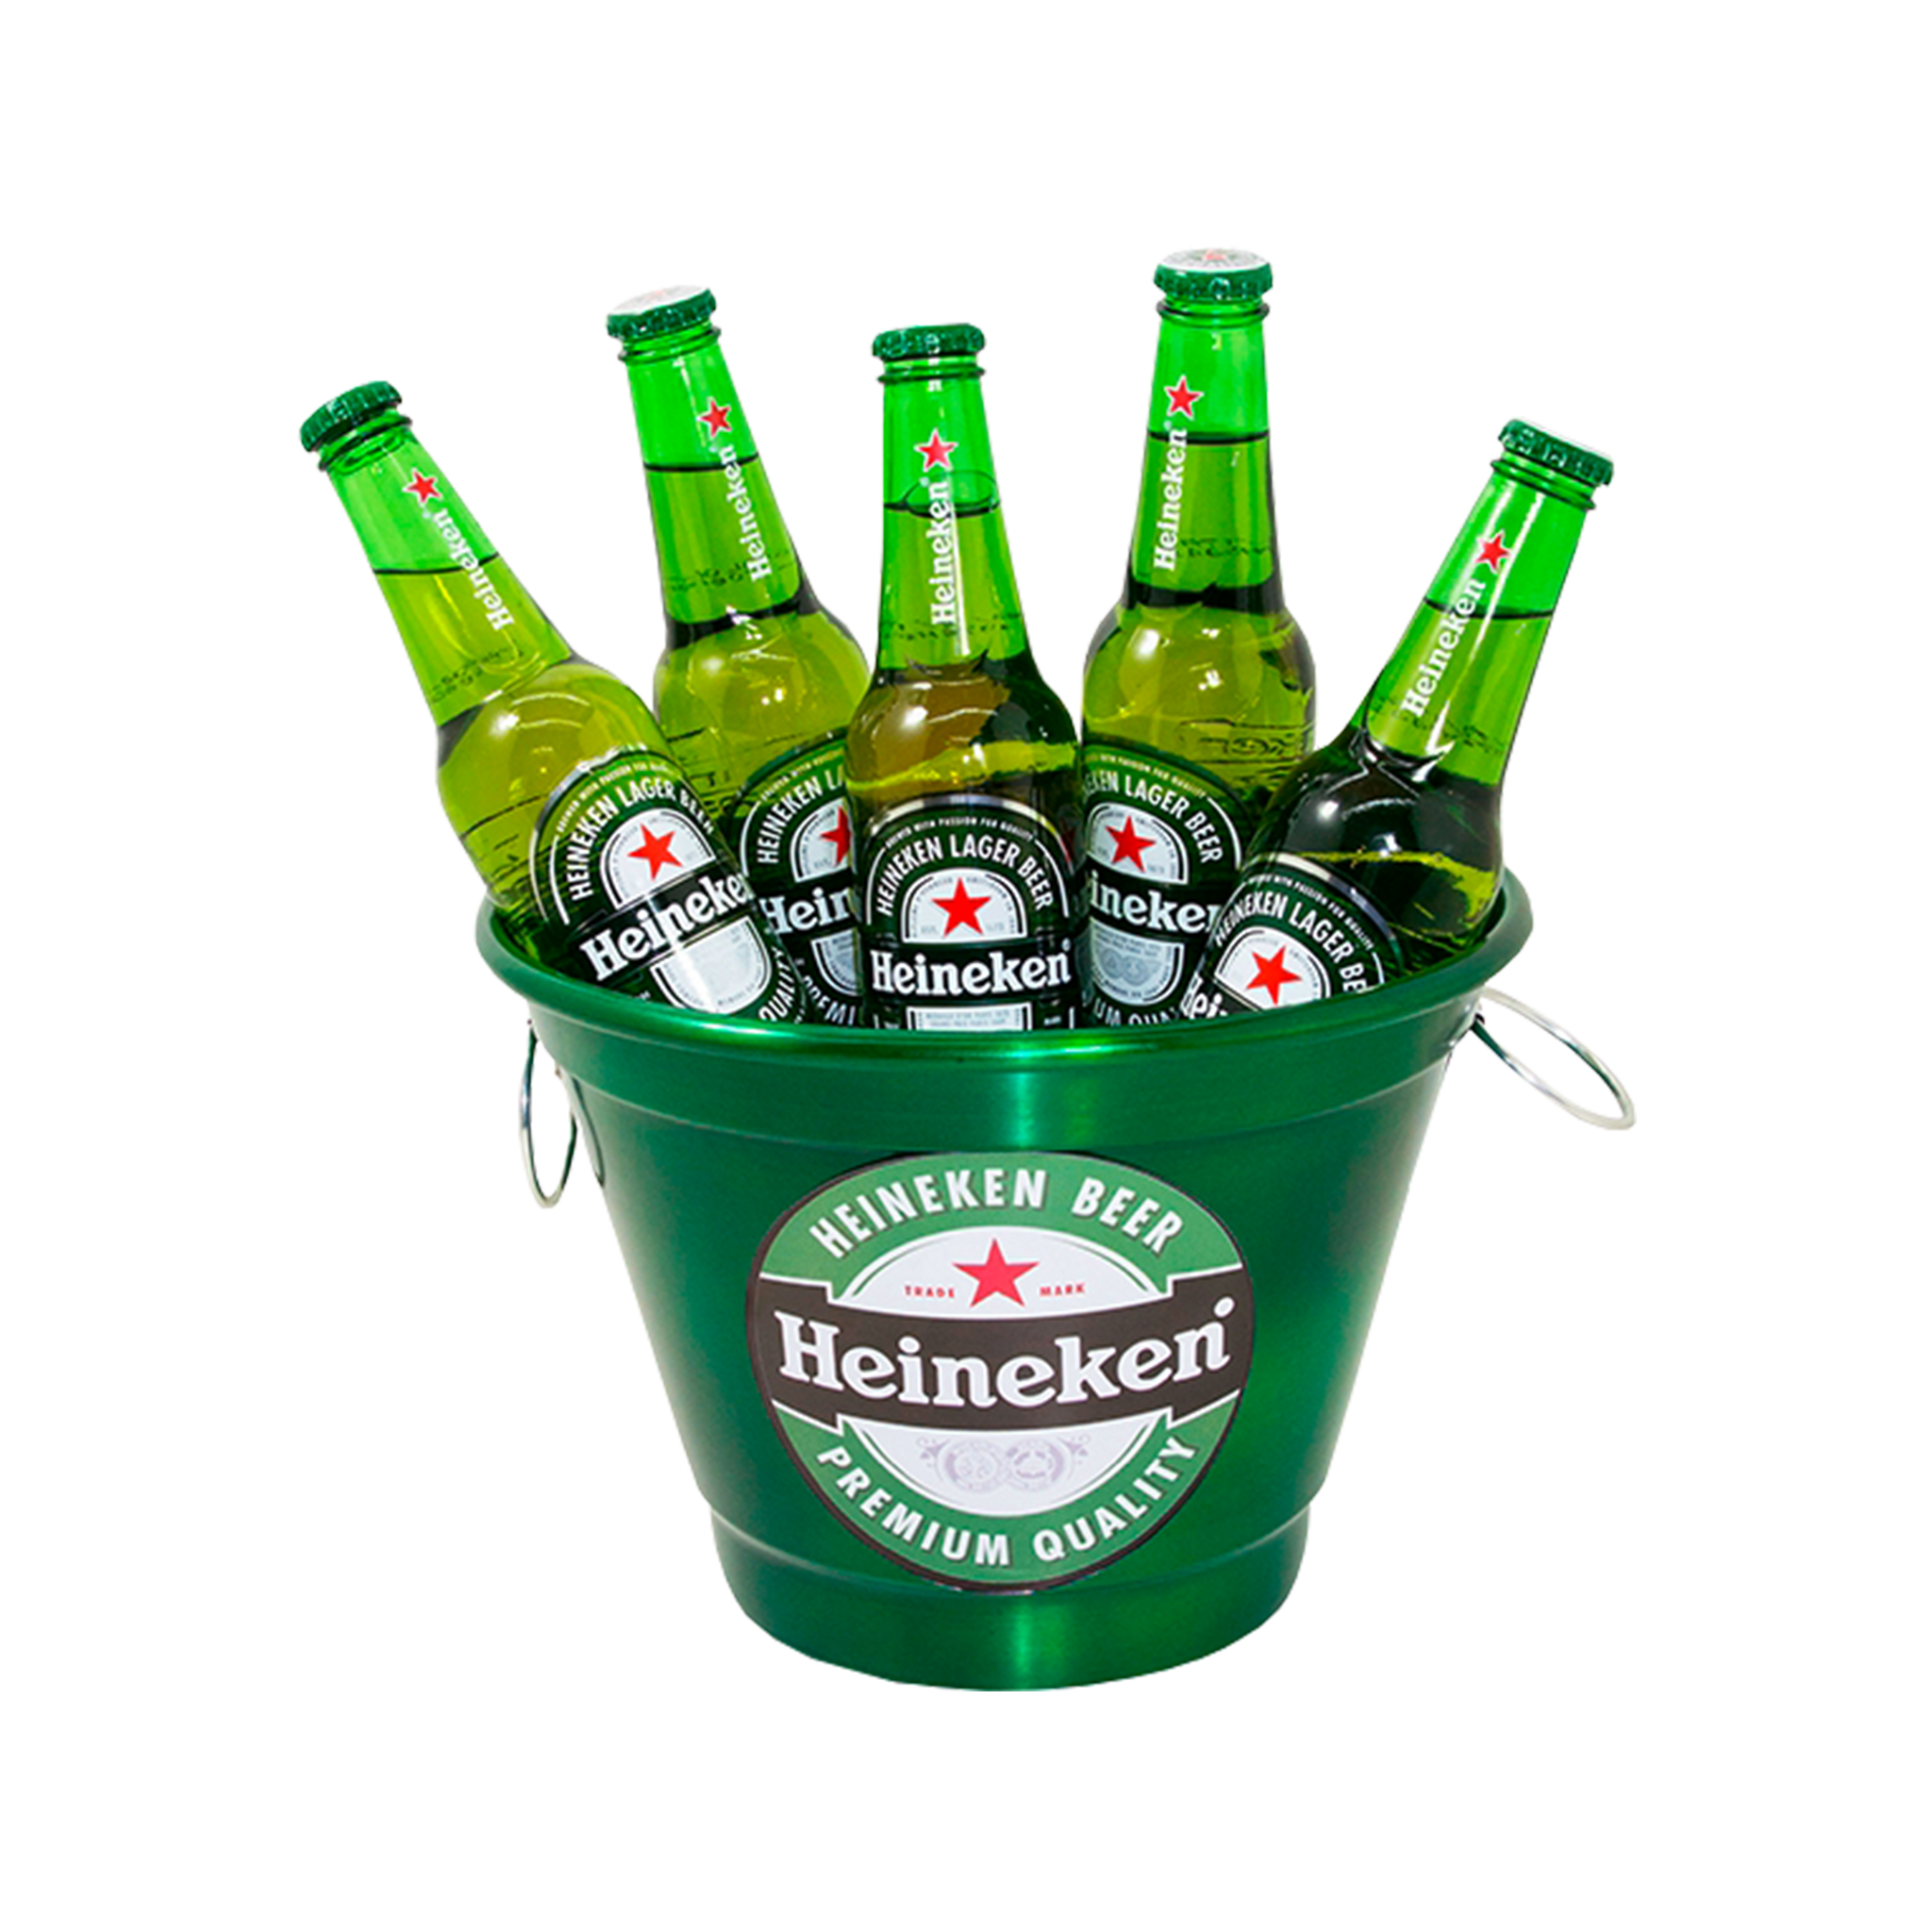 Download PNG image - Green Beer PNG Transparent Image 